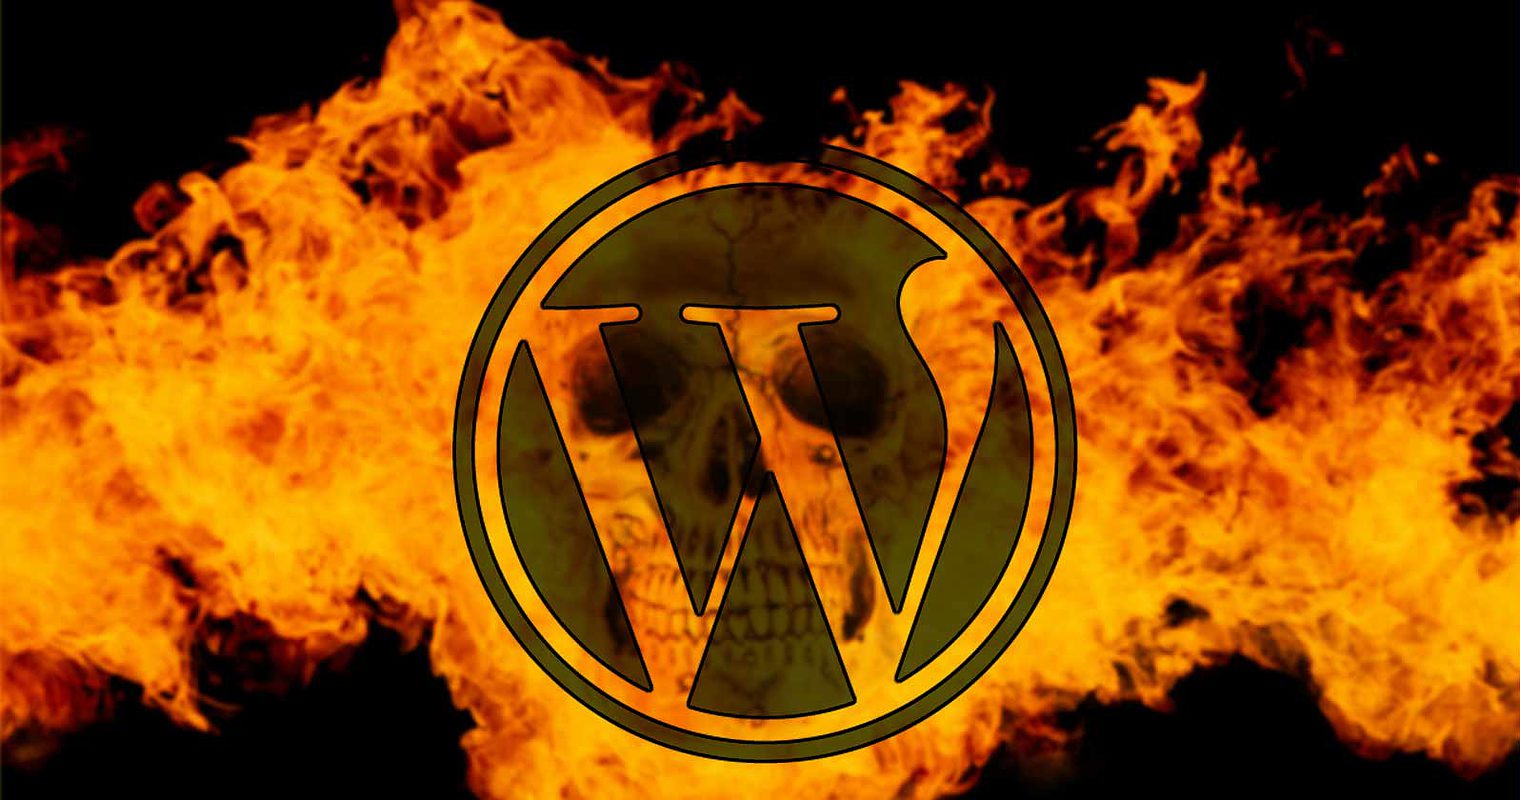 WordPress Ultimate Member Plugin Vulnerability